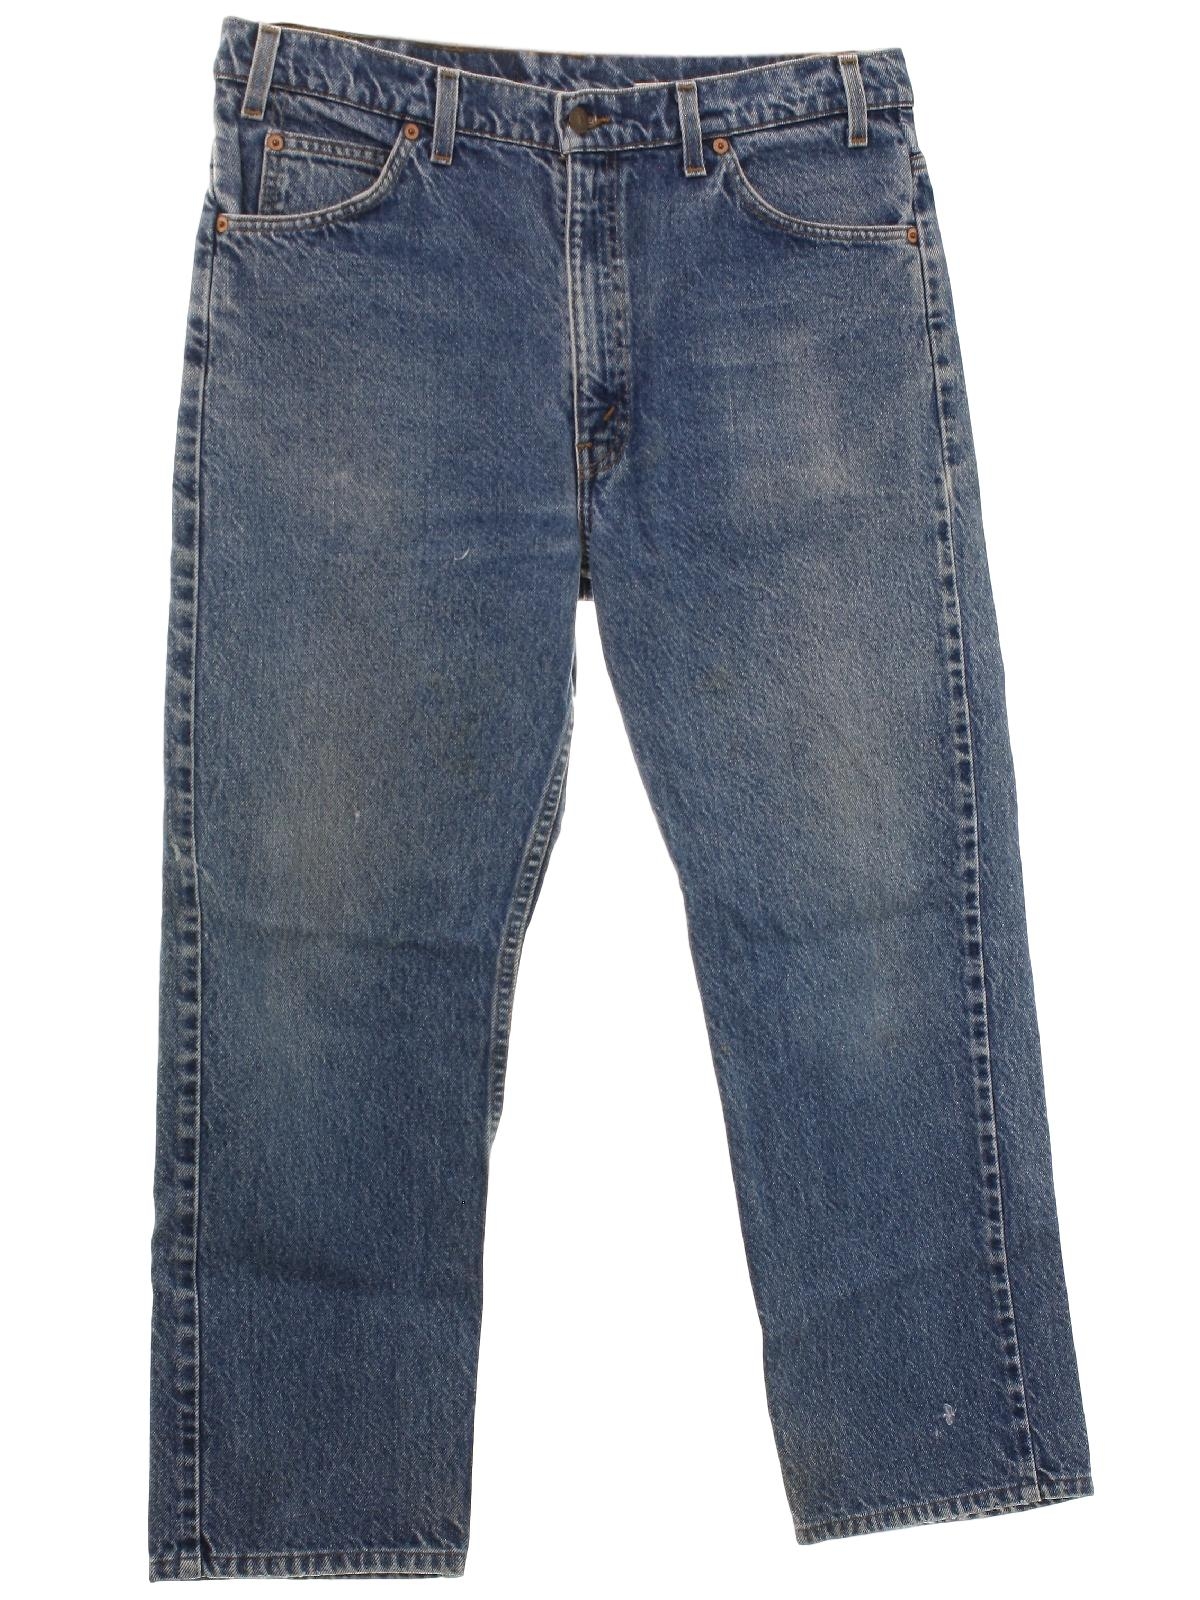 Levis 505s 1990s Vintage Pants: 90s -Levis 505s- Mens dark blue ...